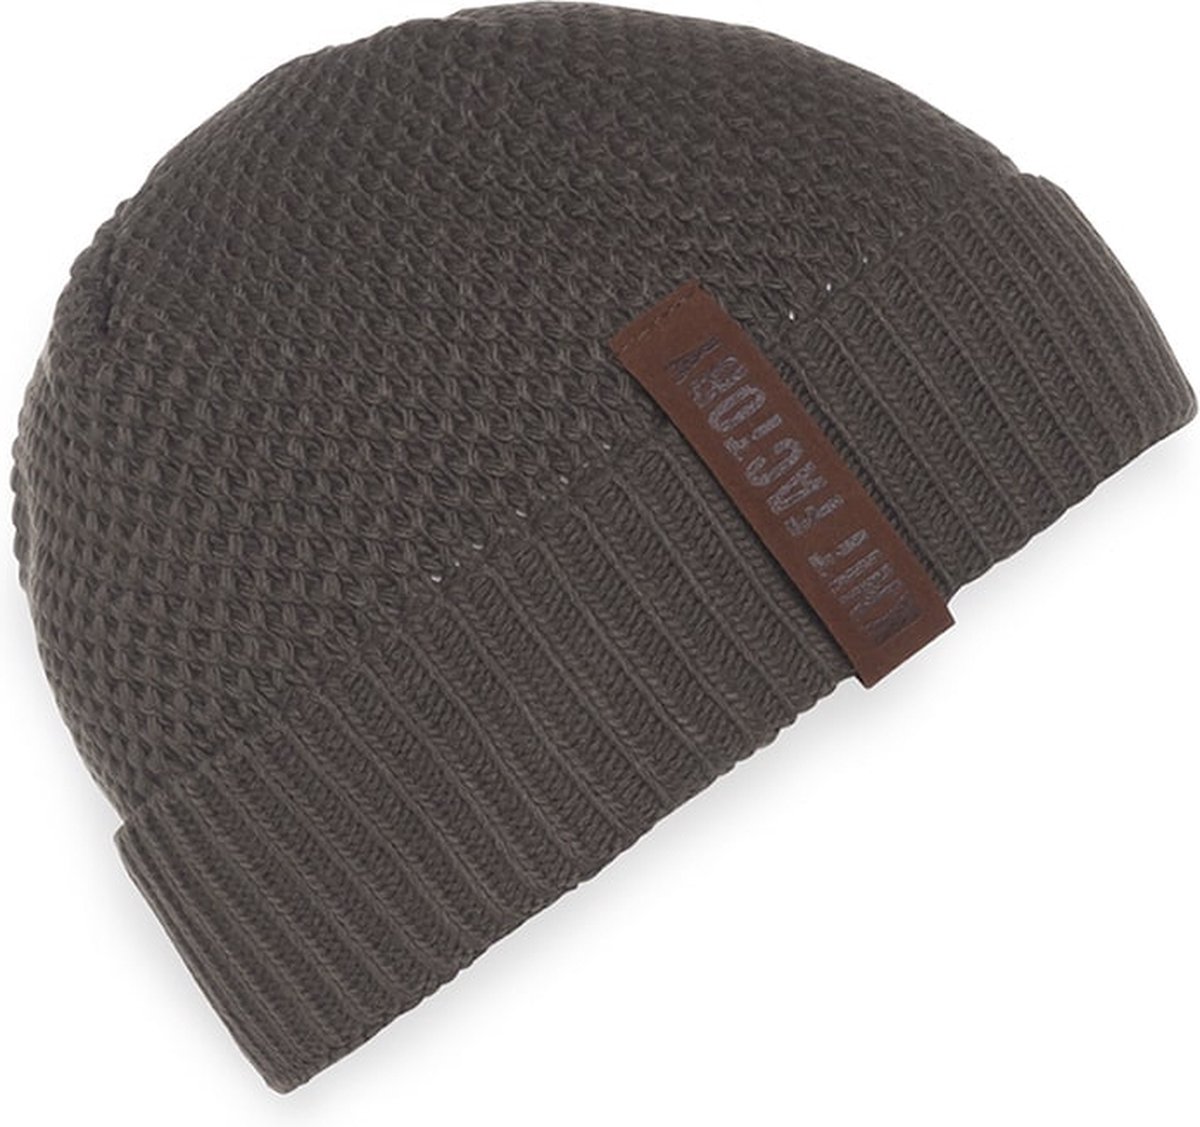 Knit Factory Jazz Gebreide Muts Heren & Dames - Beanie hat - Taupe - Warme bruine Wintermuts - Unisex - One Size